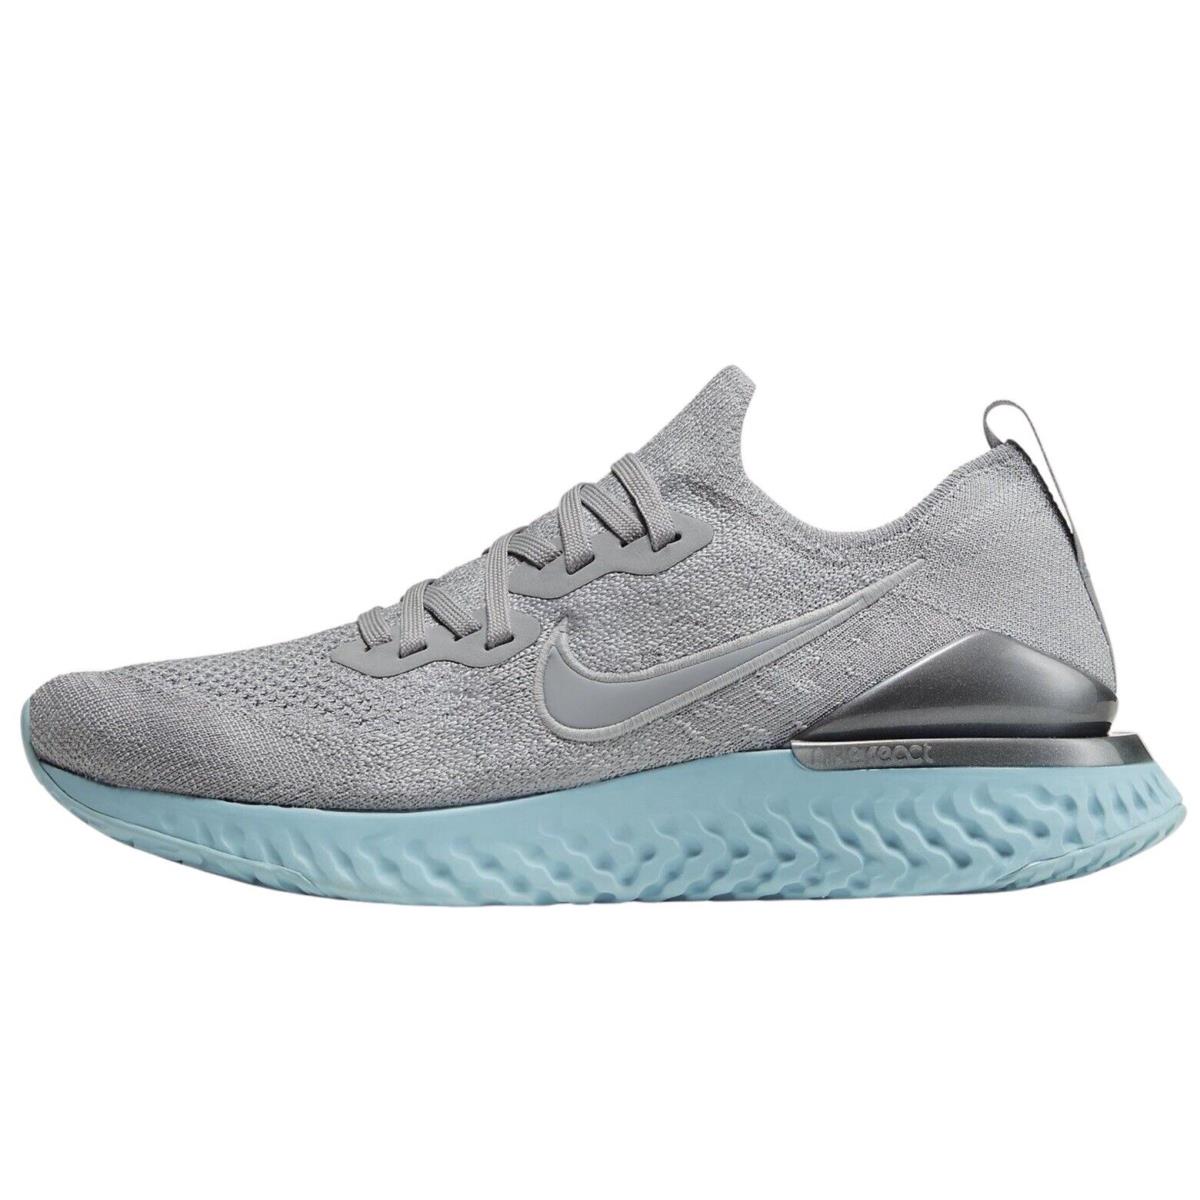 Nike Epic React Flyknit 2 Womens BQ8927-007 Wolf Grey Ocean Bliss Shoes Size 6 - Wolf Grey/Metallic Silver/Ocean Bliss